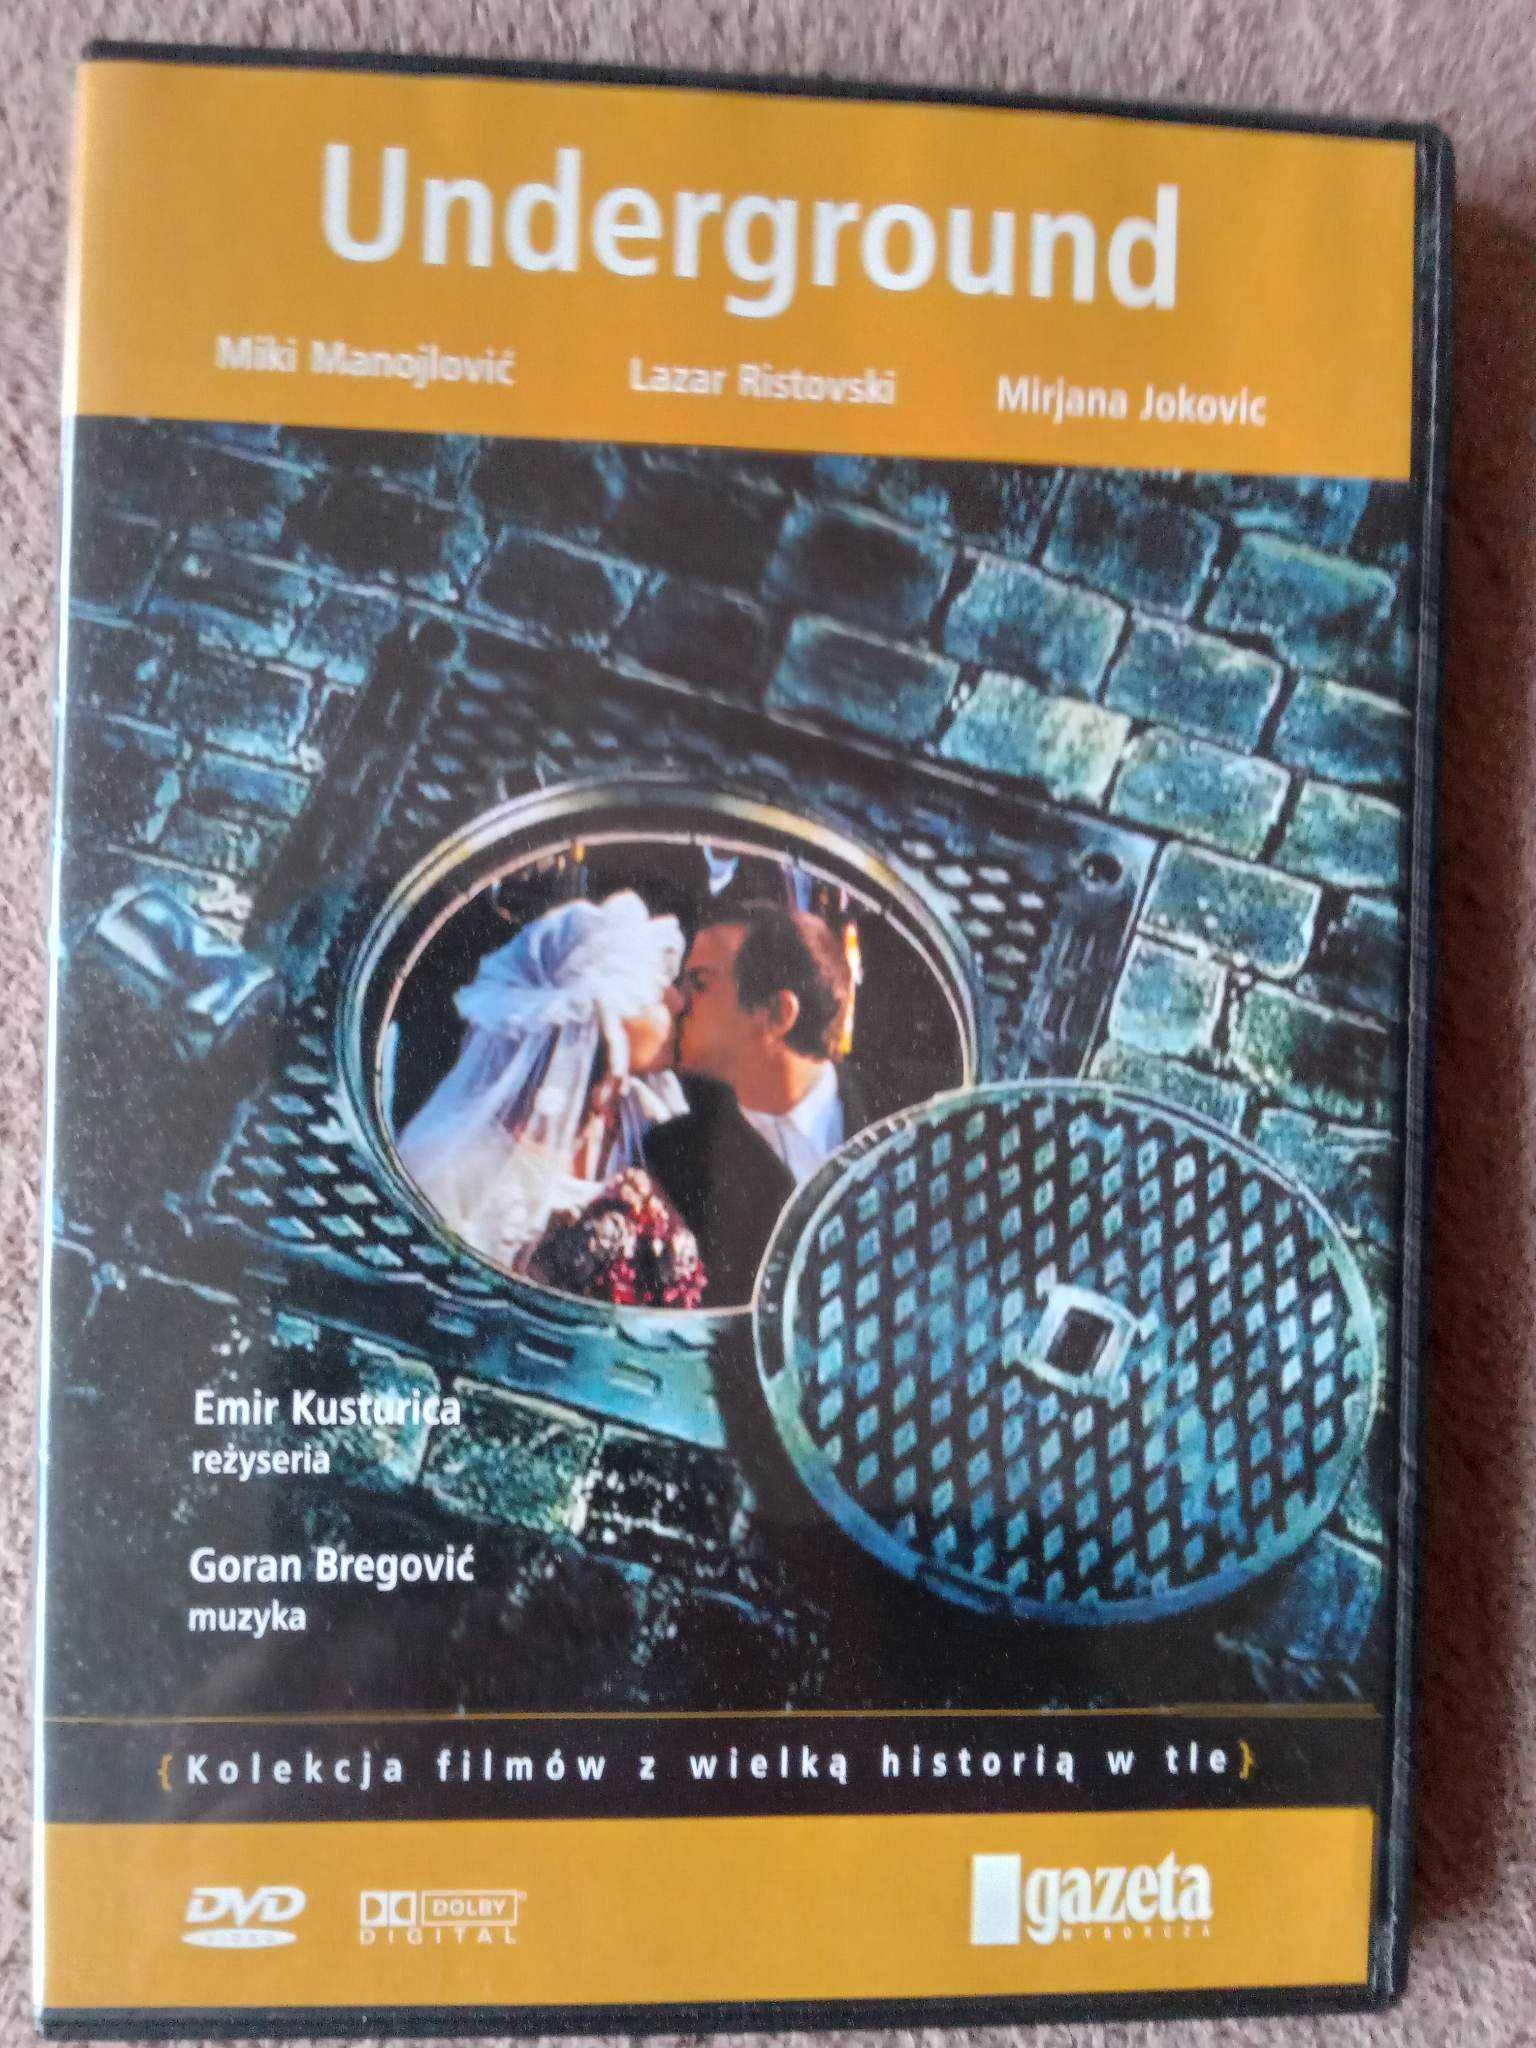 Świetny film "Underground" na dvd